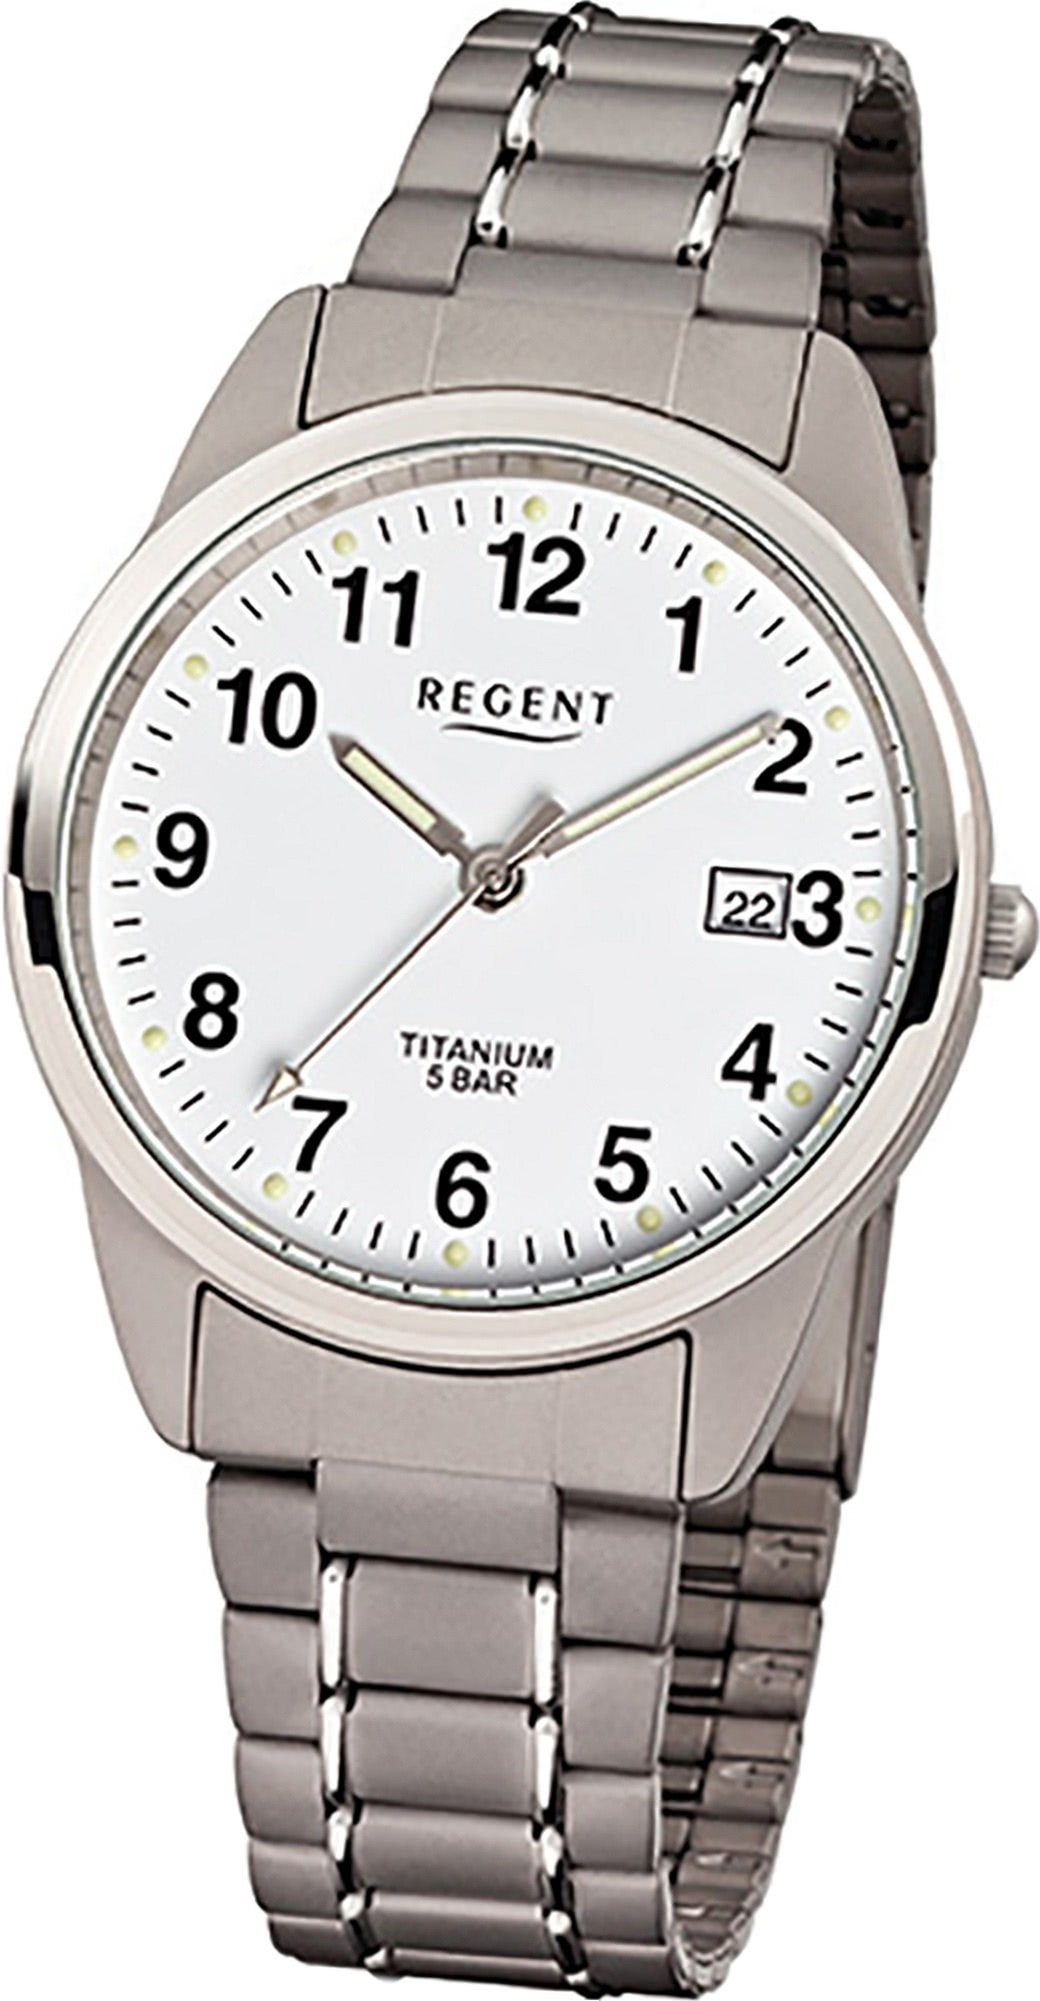 (Metall) silber, rundes Titan F-432, Quarzuhr Herren Regent Gehäuse, Regent mittel (ca. 36mm) Titanarmband Uhr grau, Herrenuhr